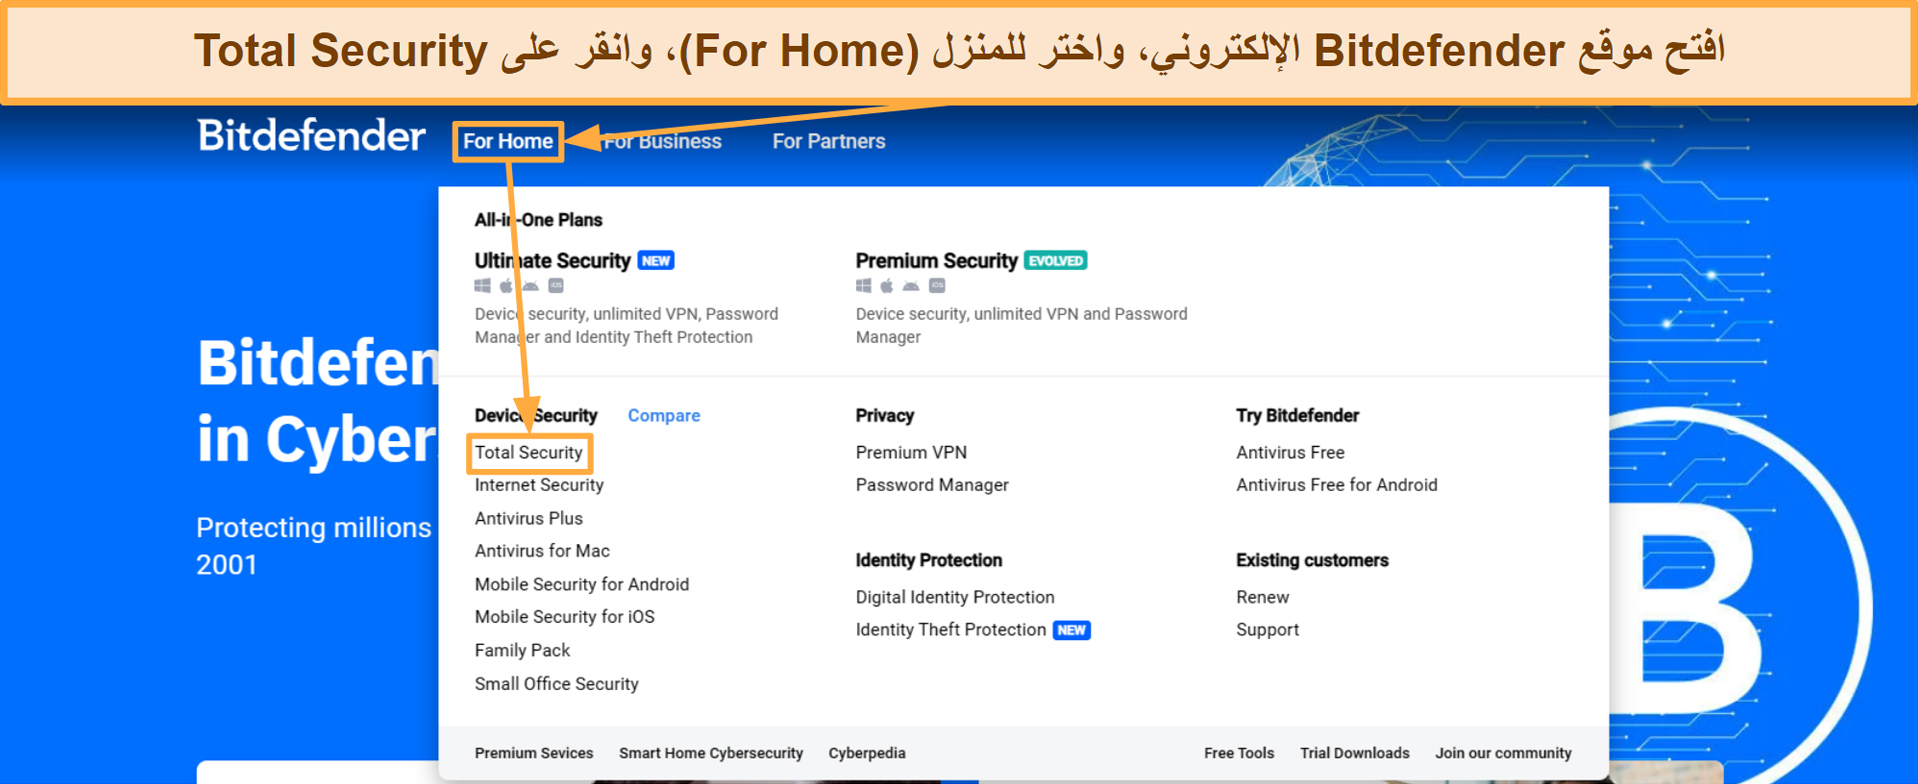 افتح موقع Bitdefender الإلكتروني، واختر للمنزل (For Home)، وانقر على Total Security